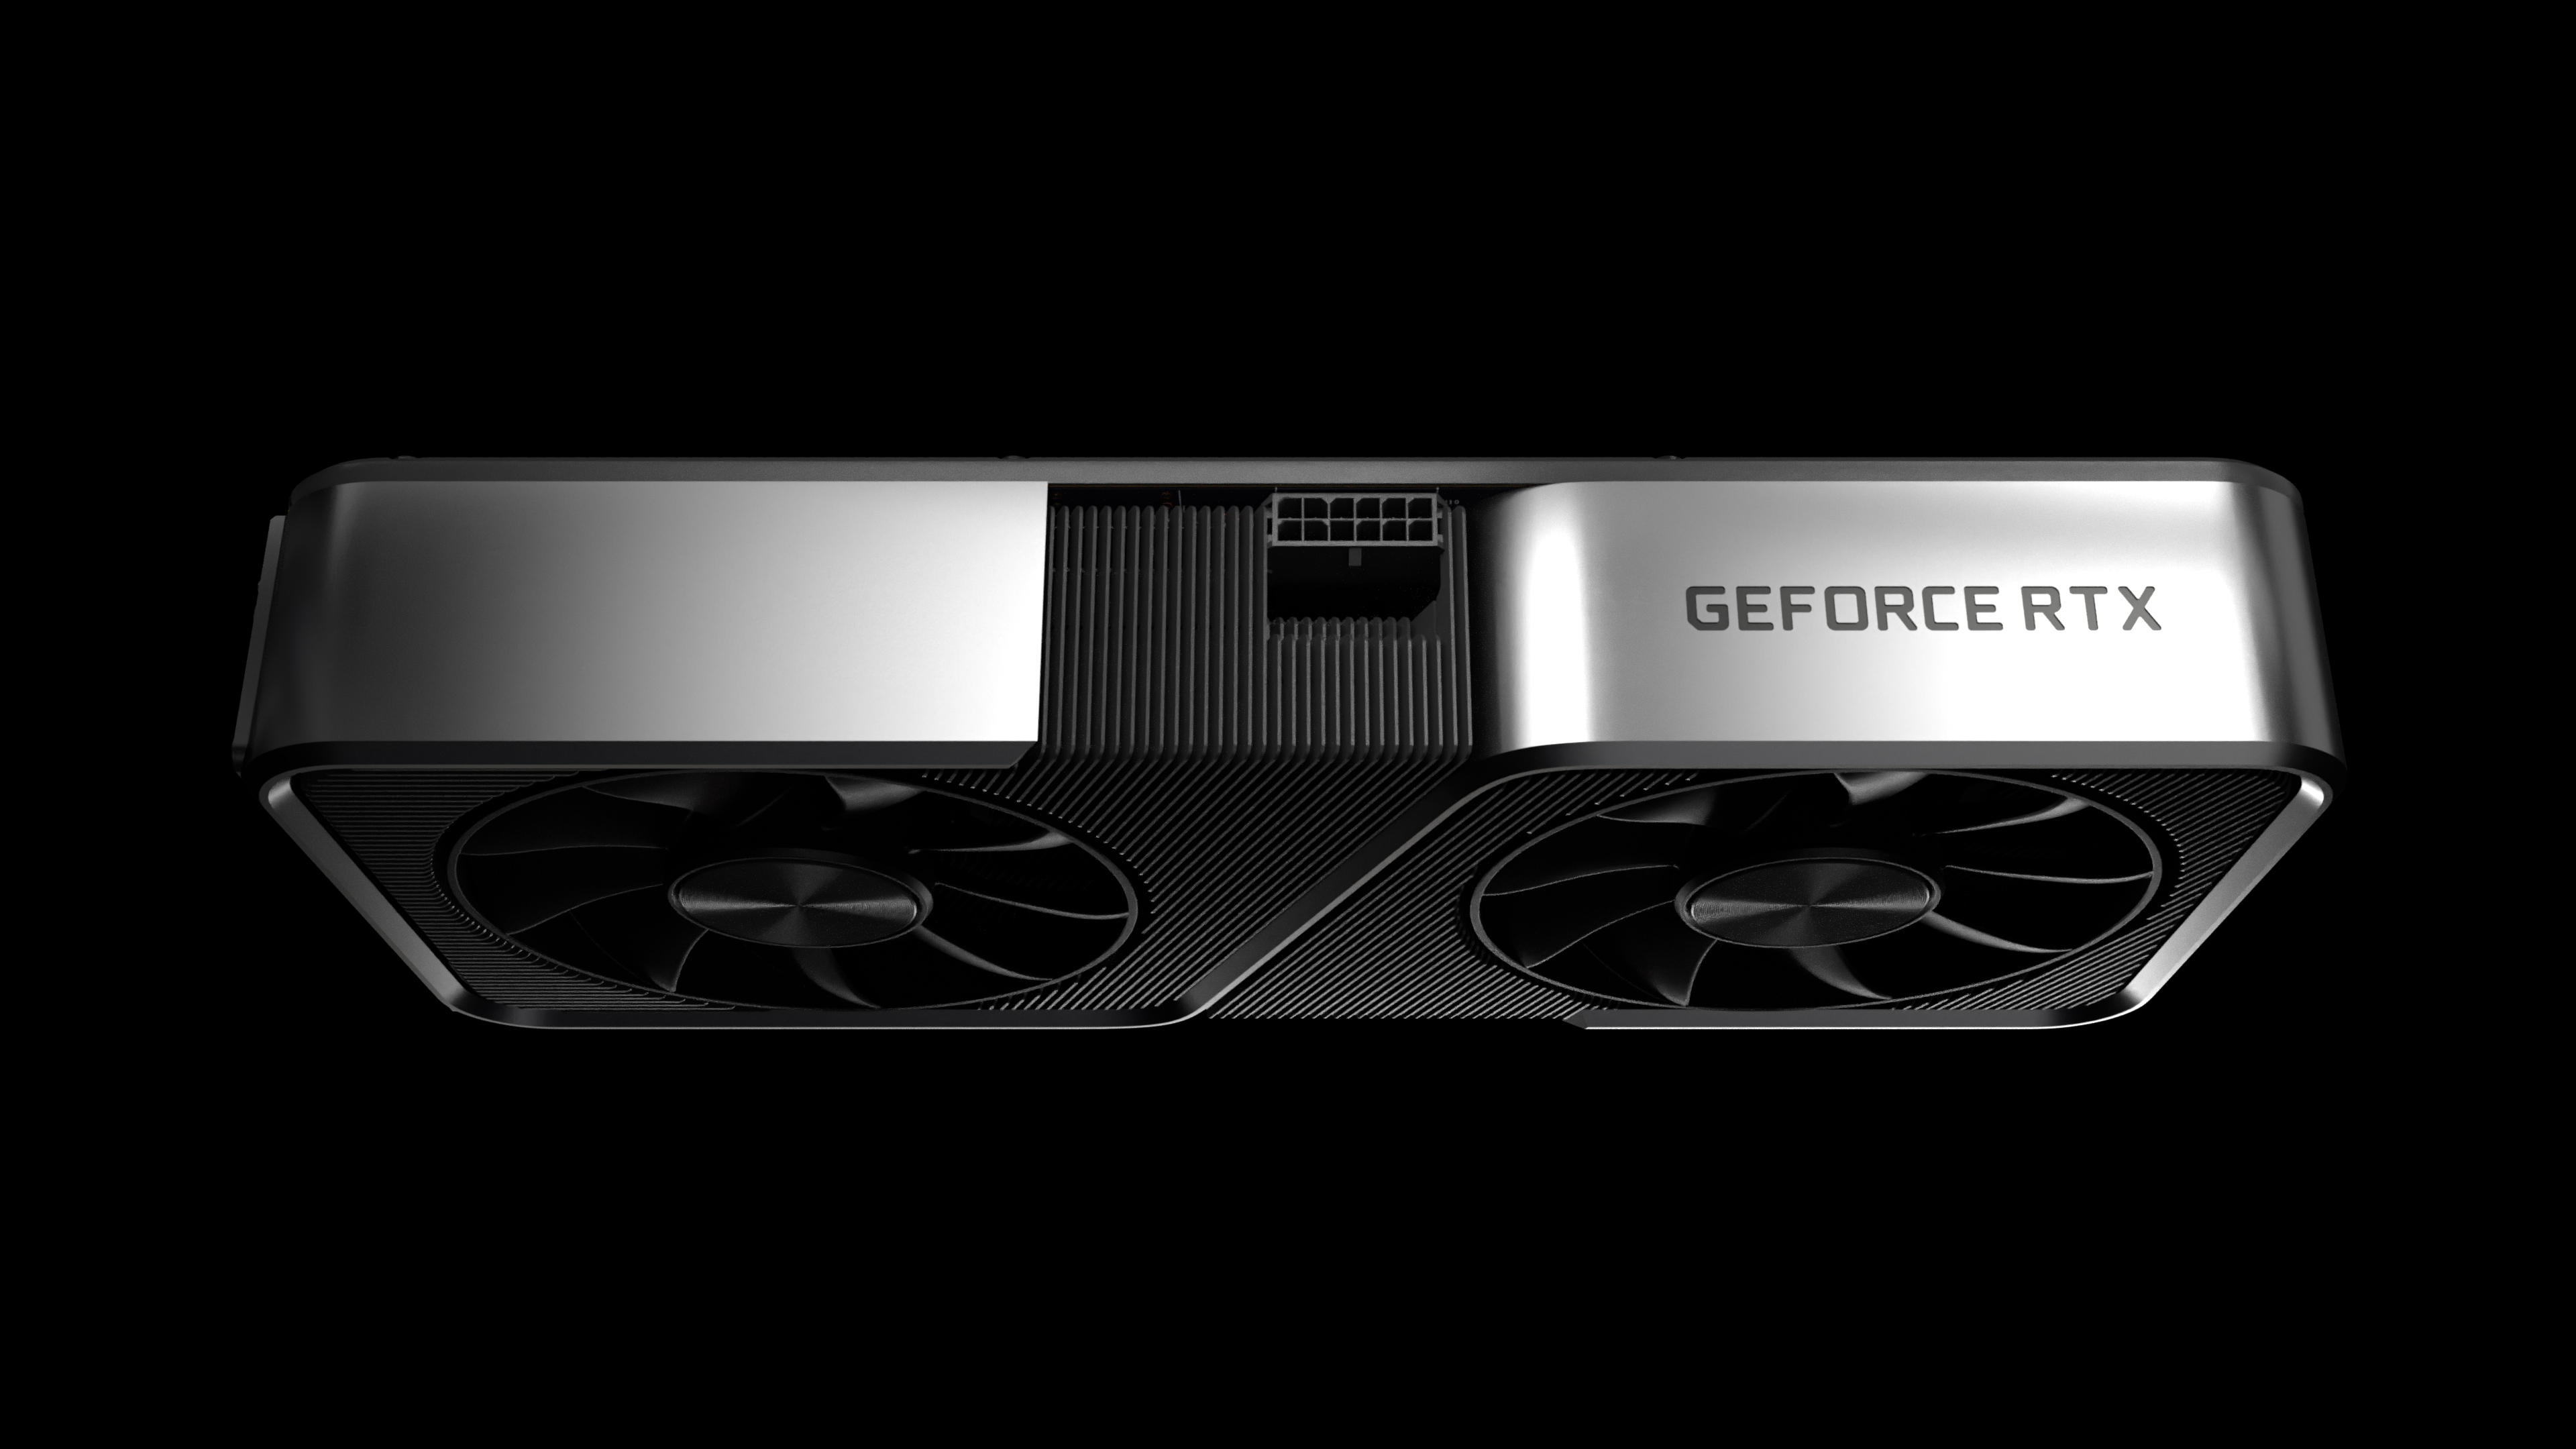 Immagine pubblicata in relazione al seguente contenuto: NVIDIA annuncia la data di lancio della video card GeForce RTX 3070 | Nome immagine: news31115_NVIDIA-GeForce-RTX-3070_1.jpg